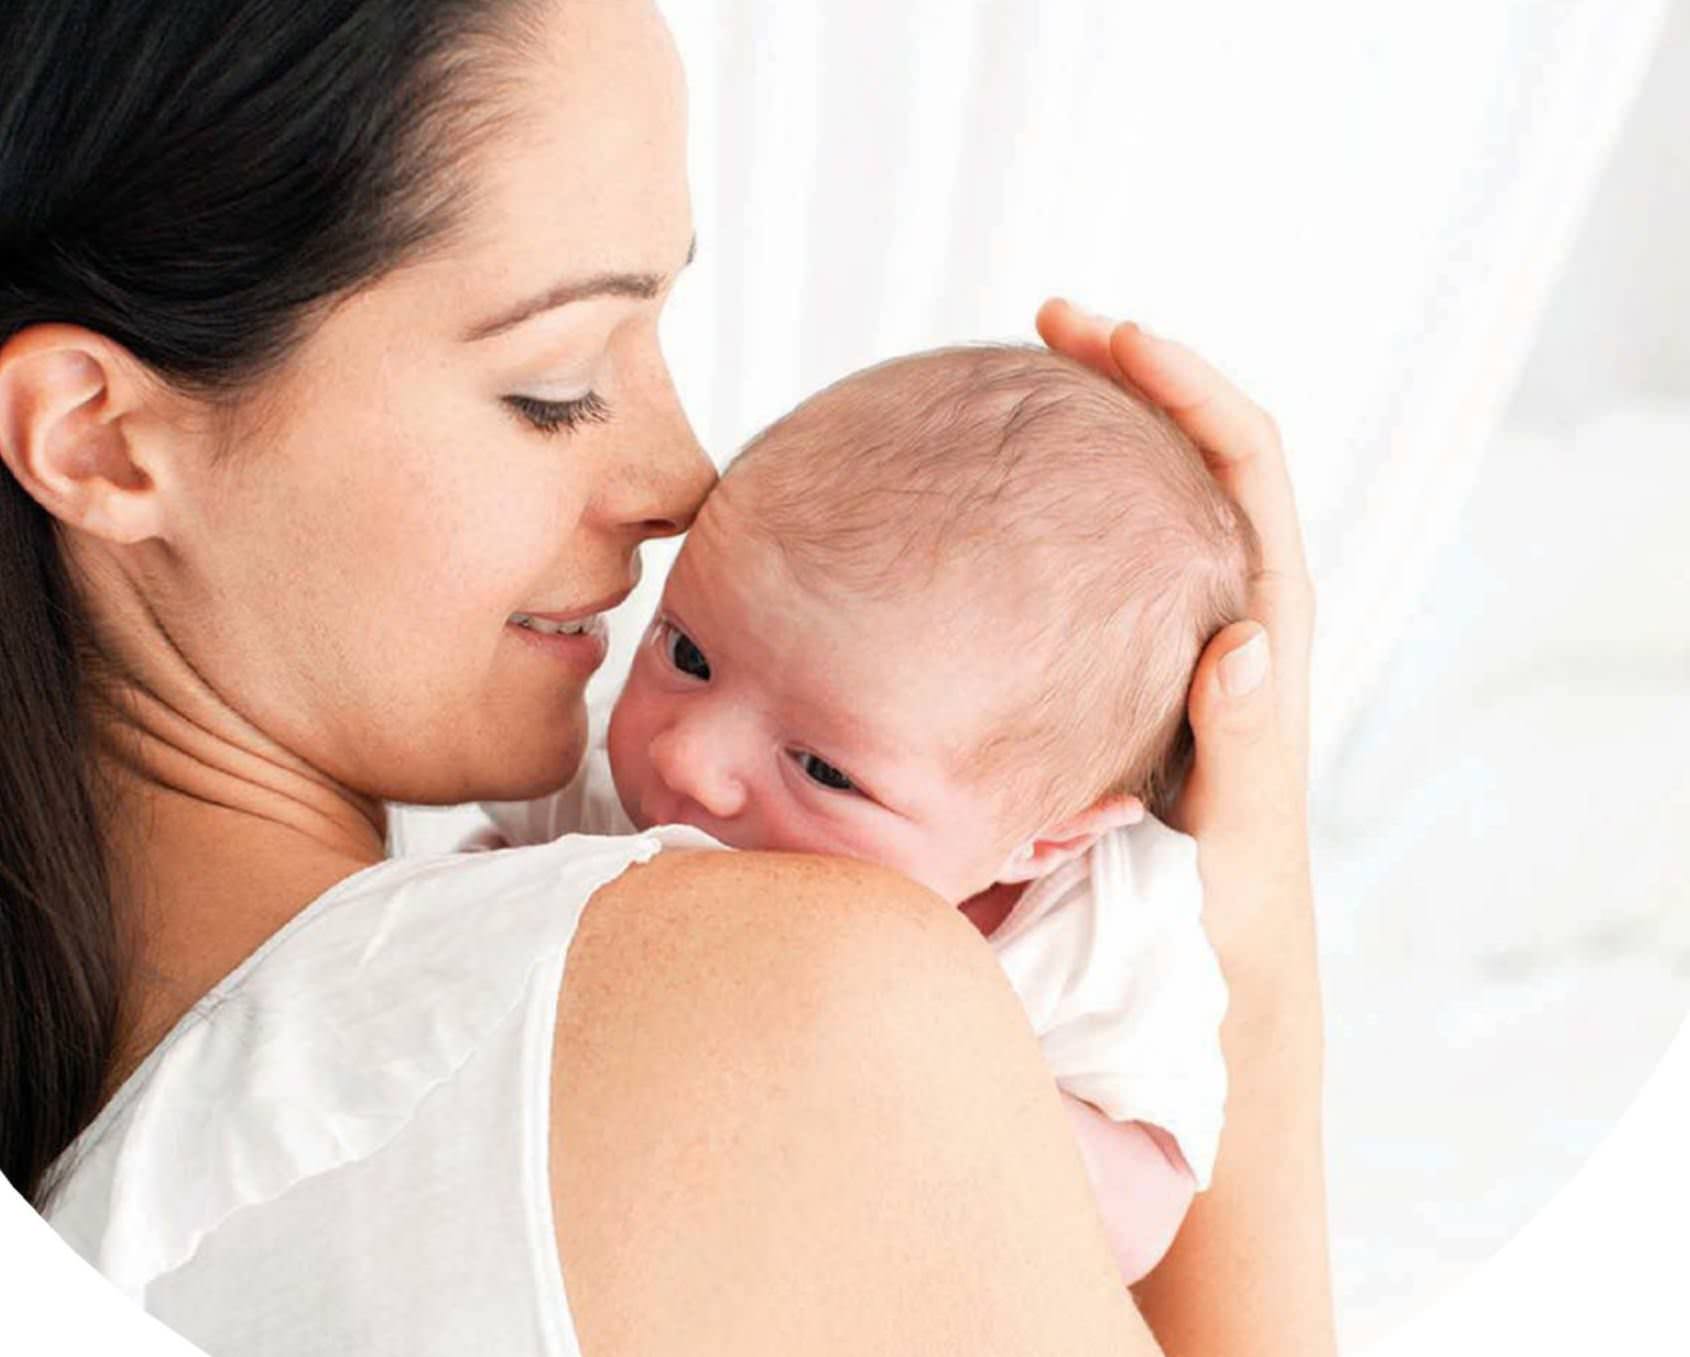 Почему рекомендуется держать новорожденного столбиком после кормления? как правильно держать новорожденного столбиком? - автор екатерина данилова - журнал женское мнение